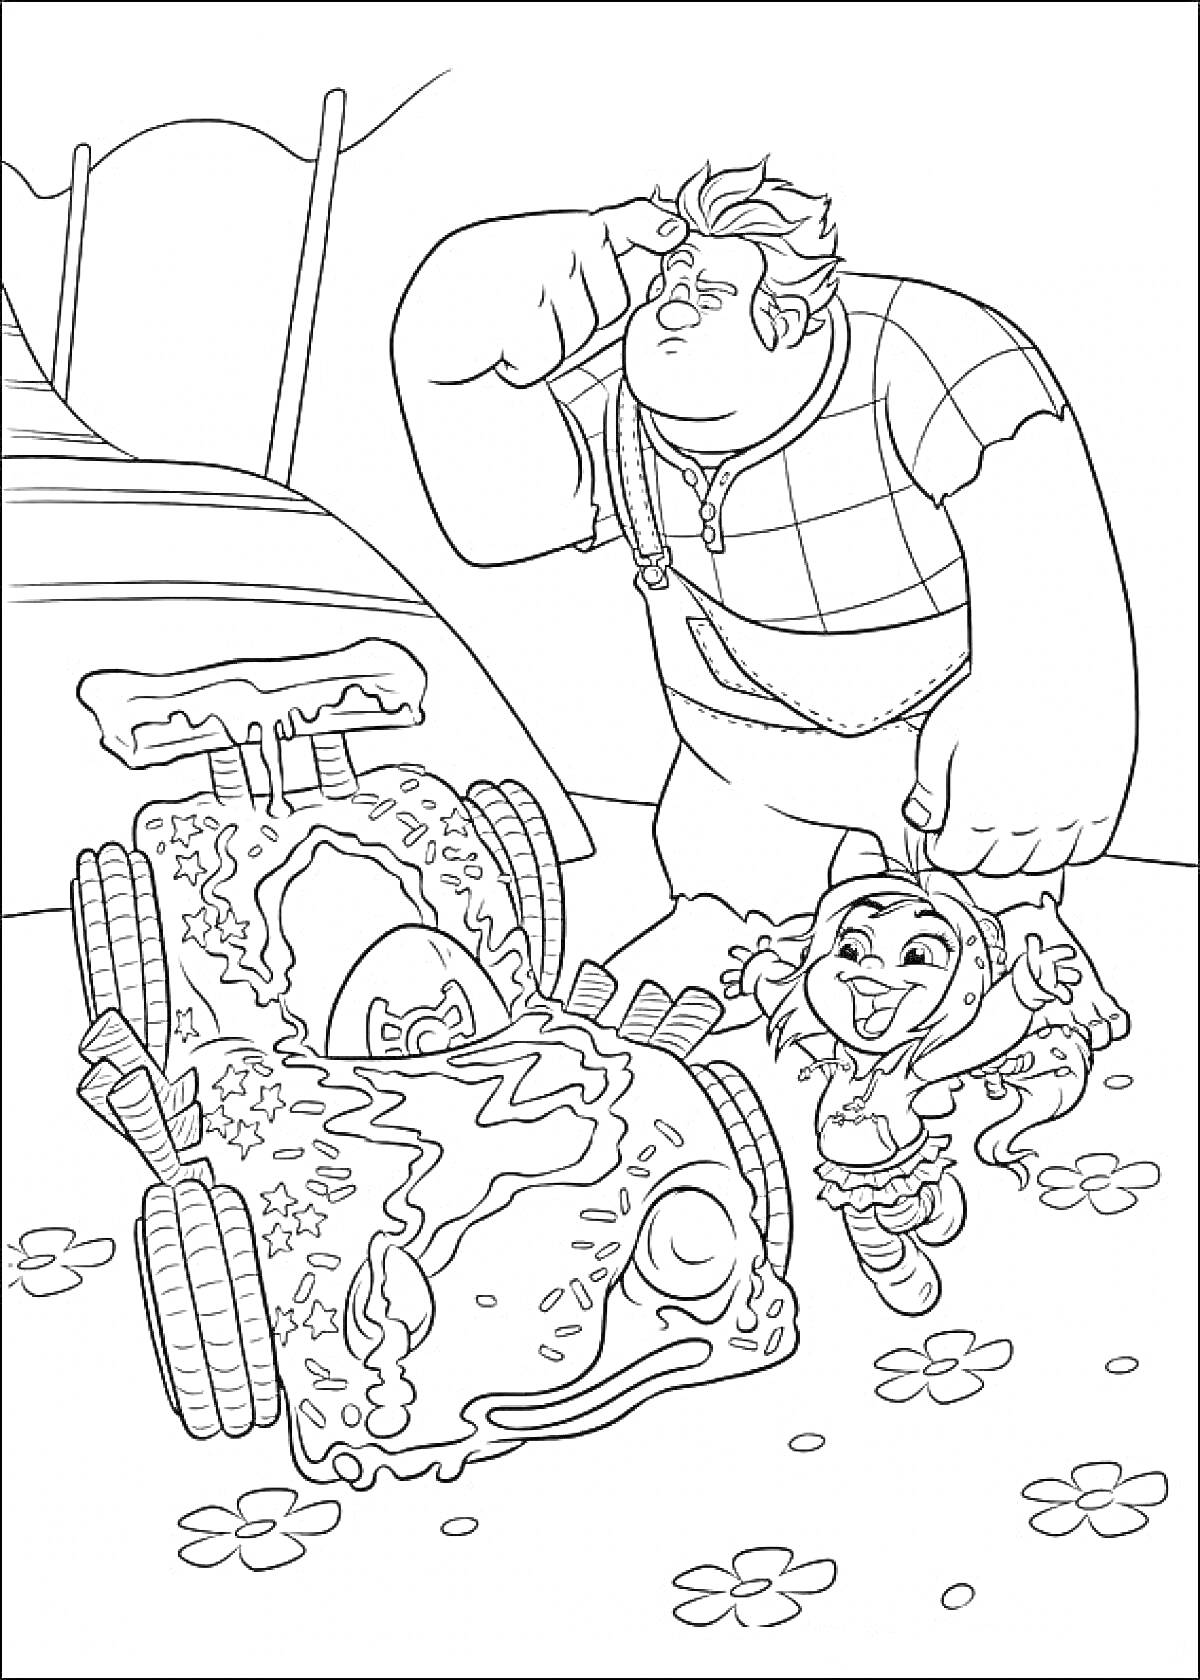 Раскраска Человек в клетчатой рубашке с суровым выражением лица и девочка с радостным лицом рядом с украшенной машиной с картой